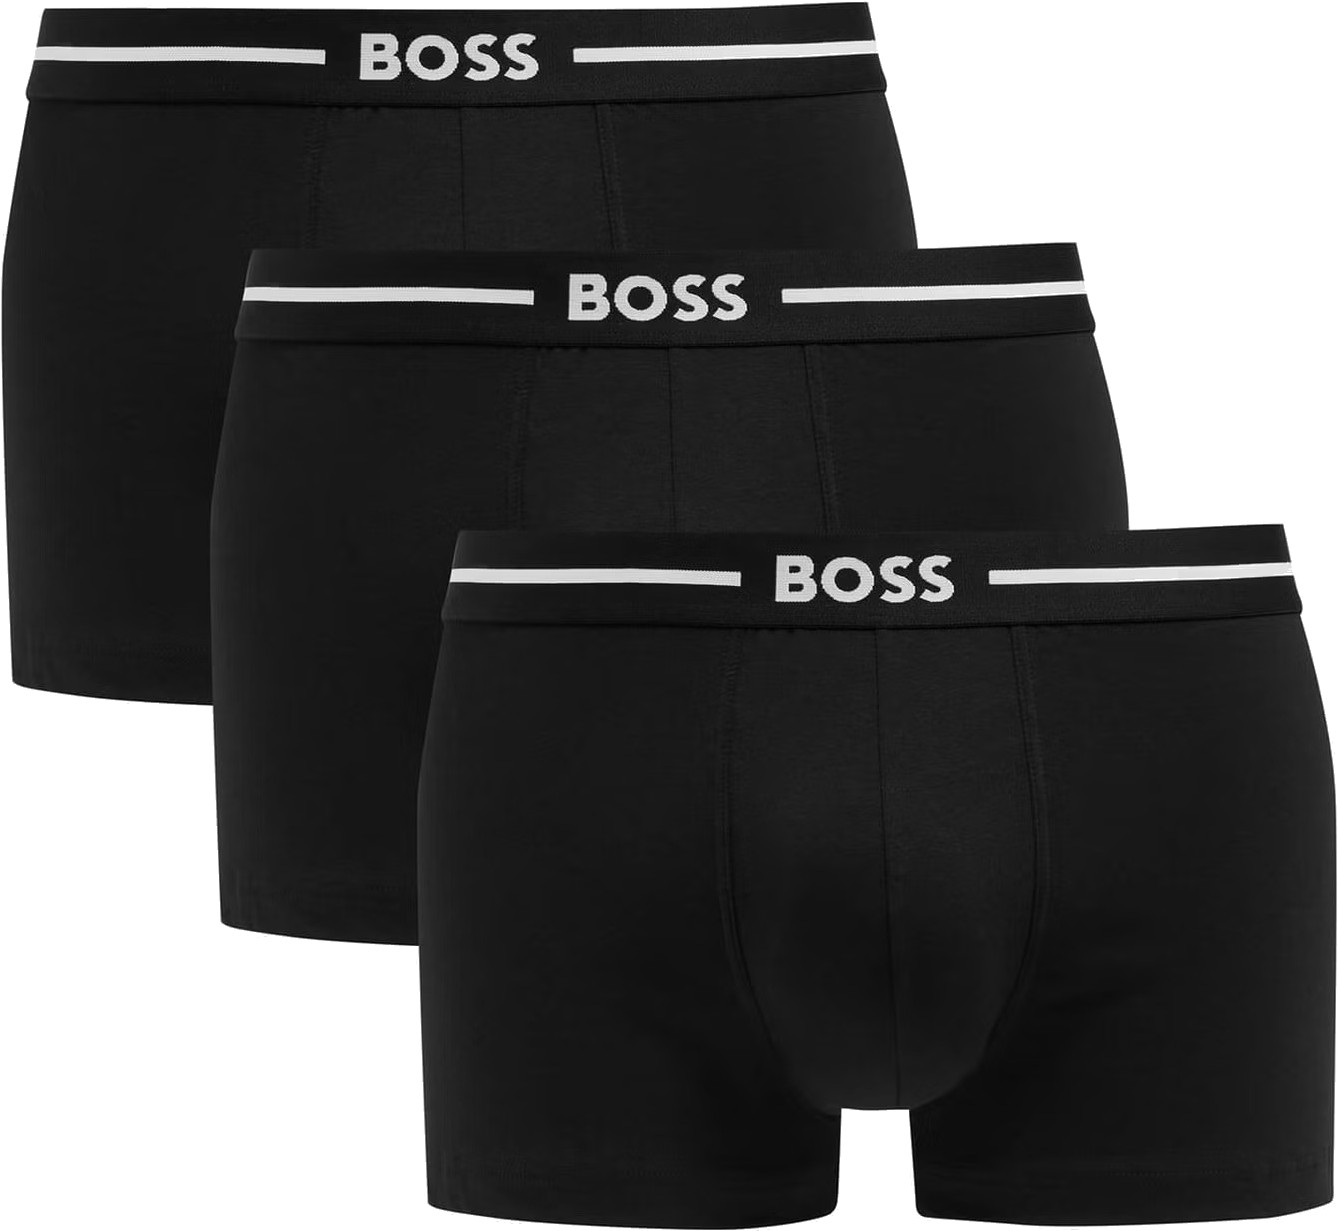 Hugo Boss 3 PACK - pánske boxerky BOSS 50510687-001 L